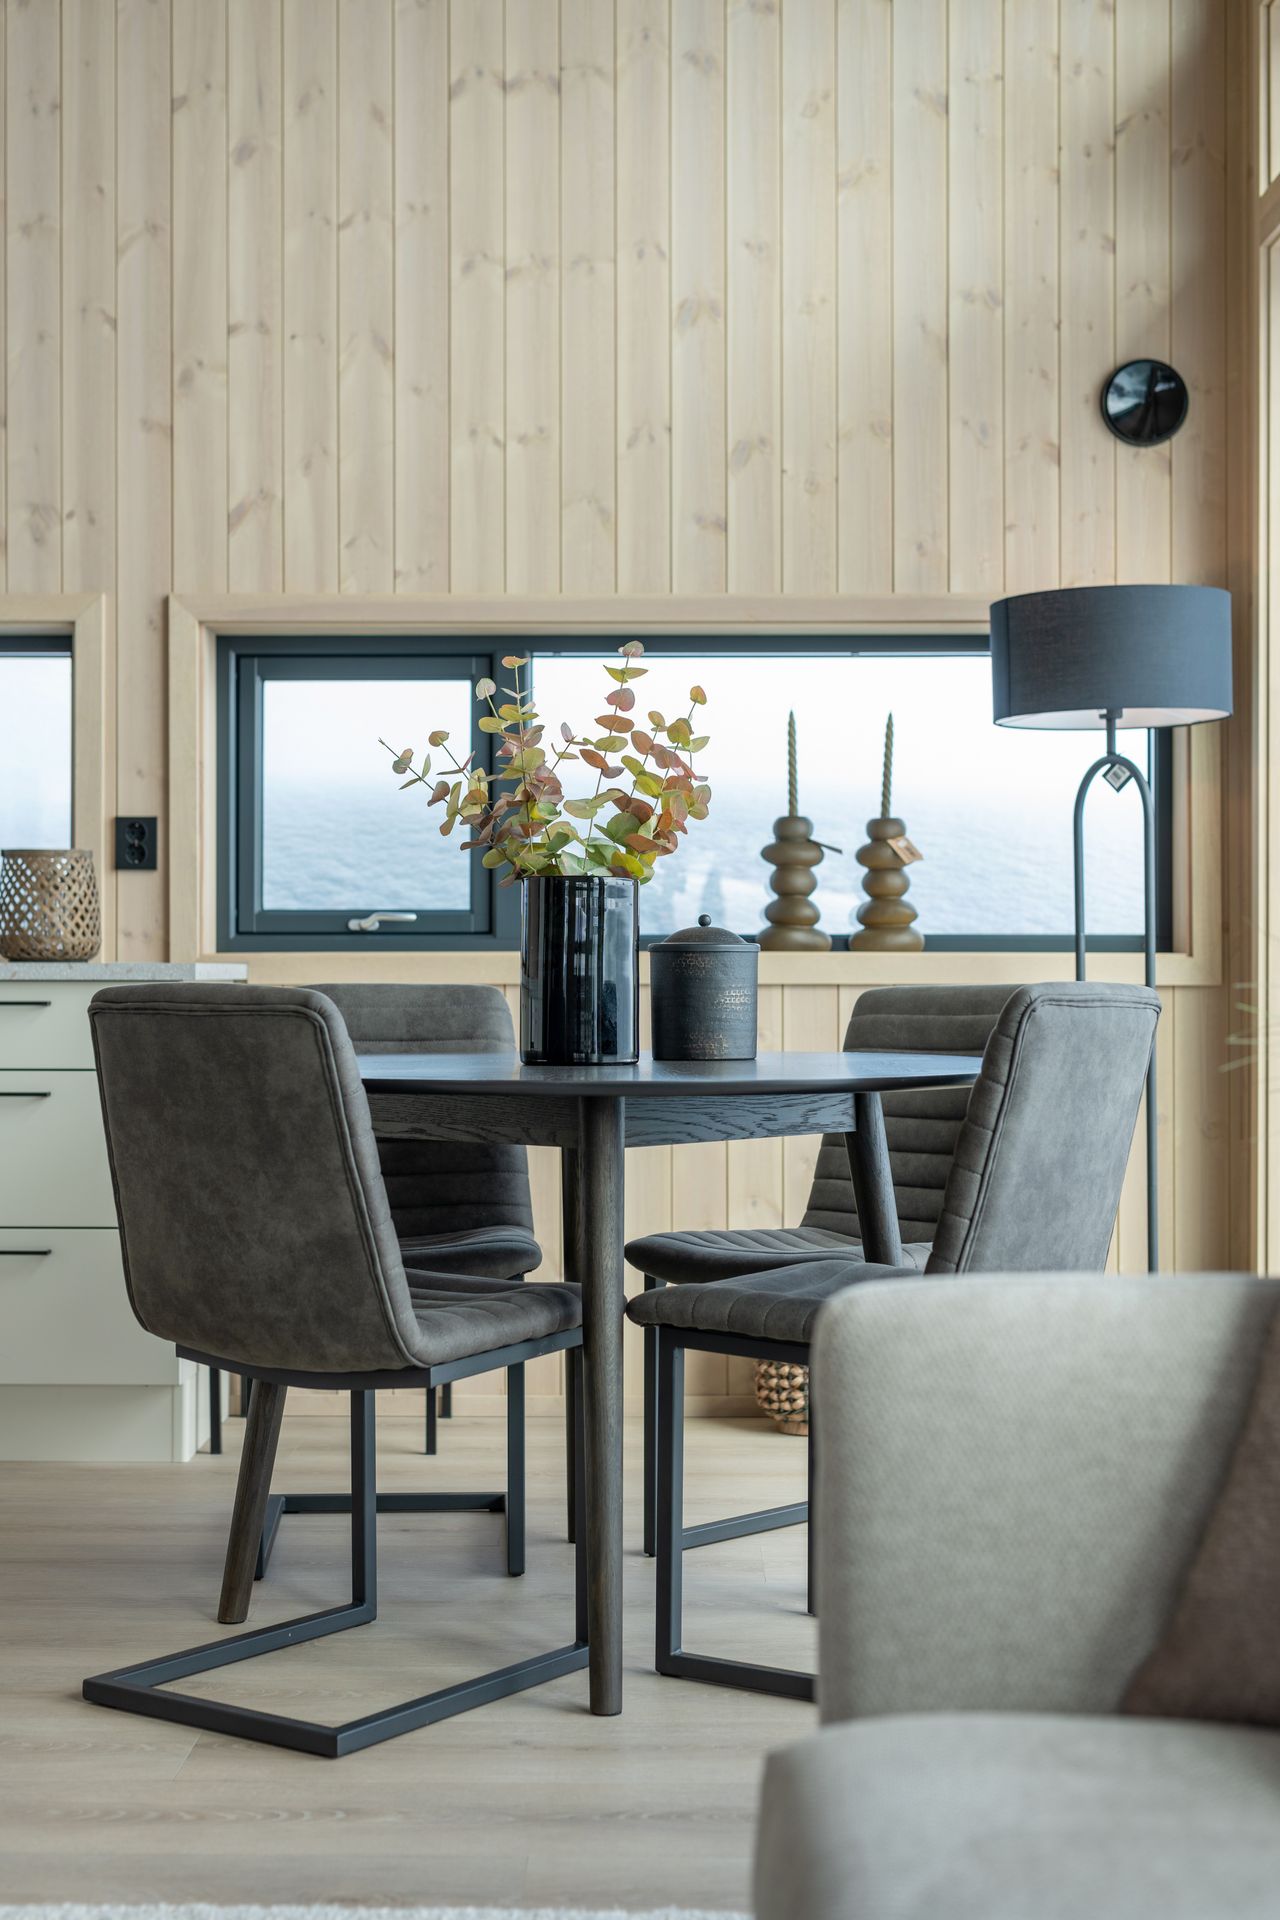 INNFLYTNINGSKLAR møblert hytte på Vågsli – NY hytte med meget høy standard!